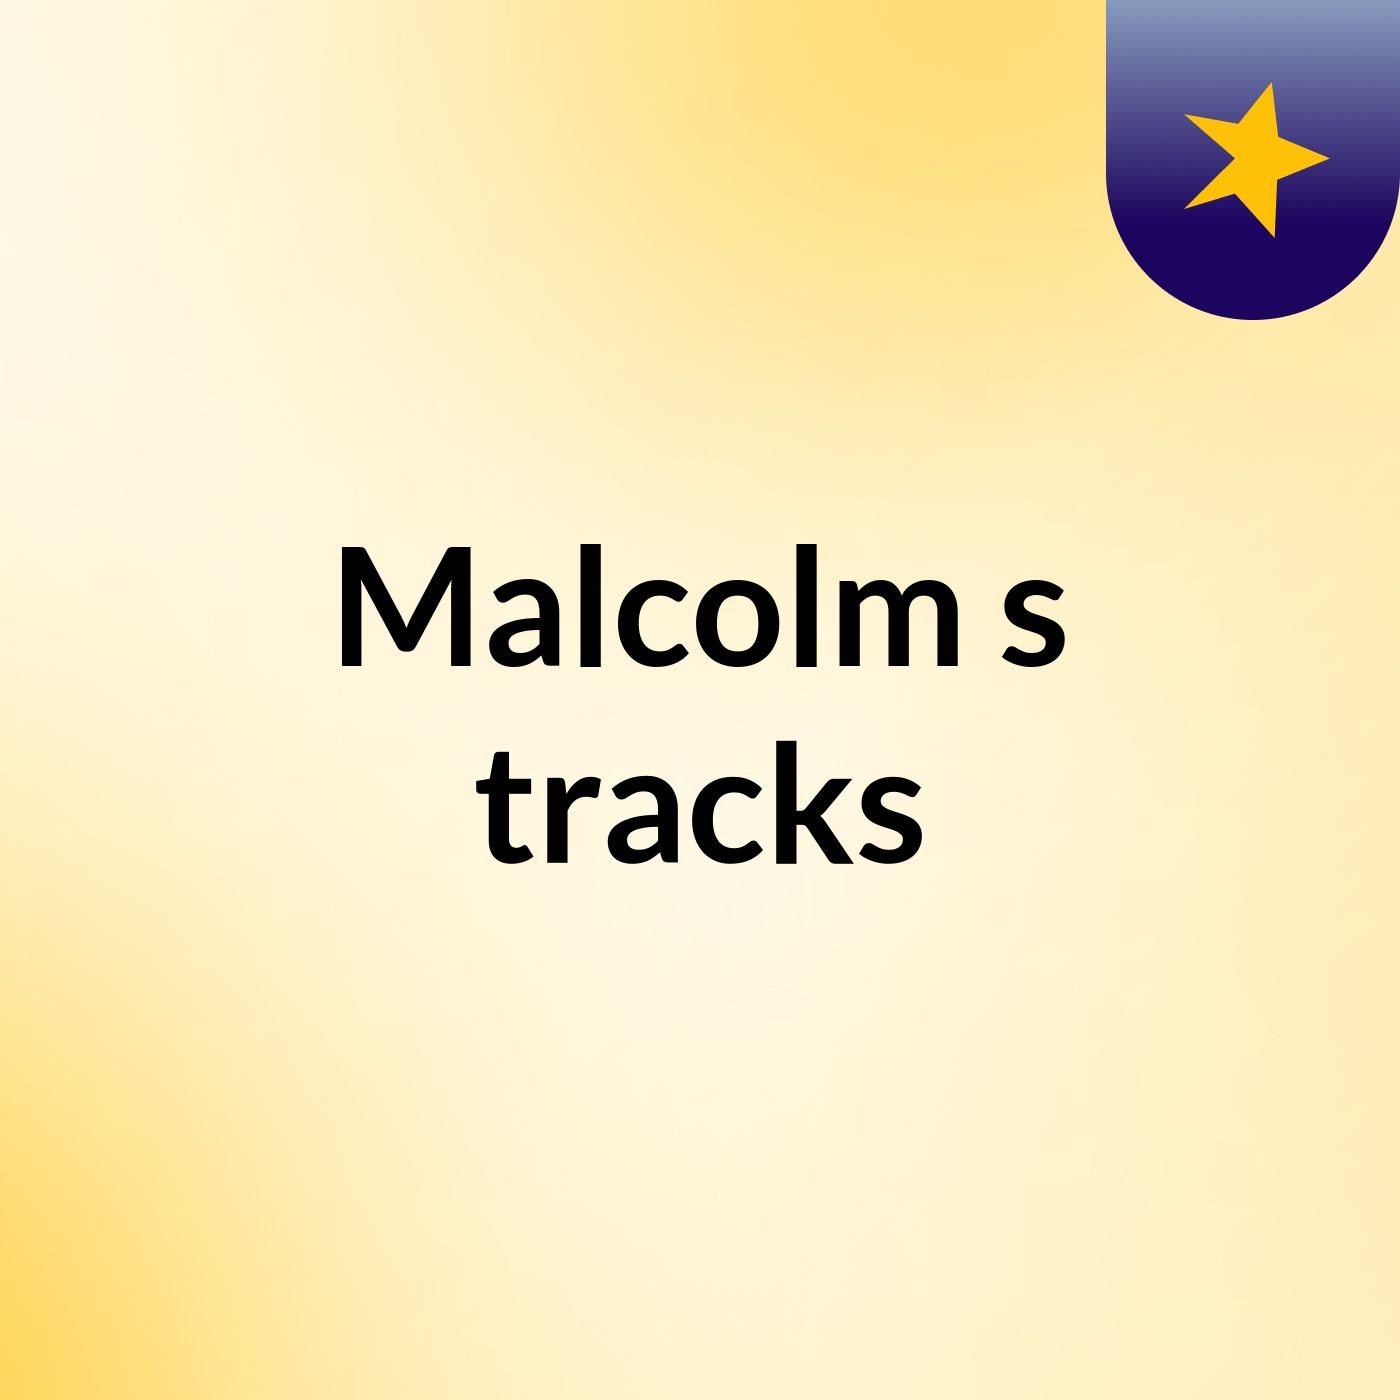 Malcolm's tracks